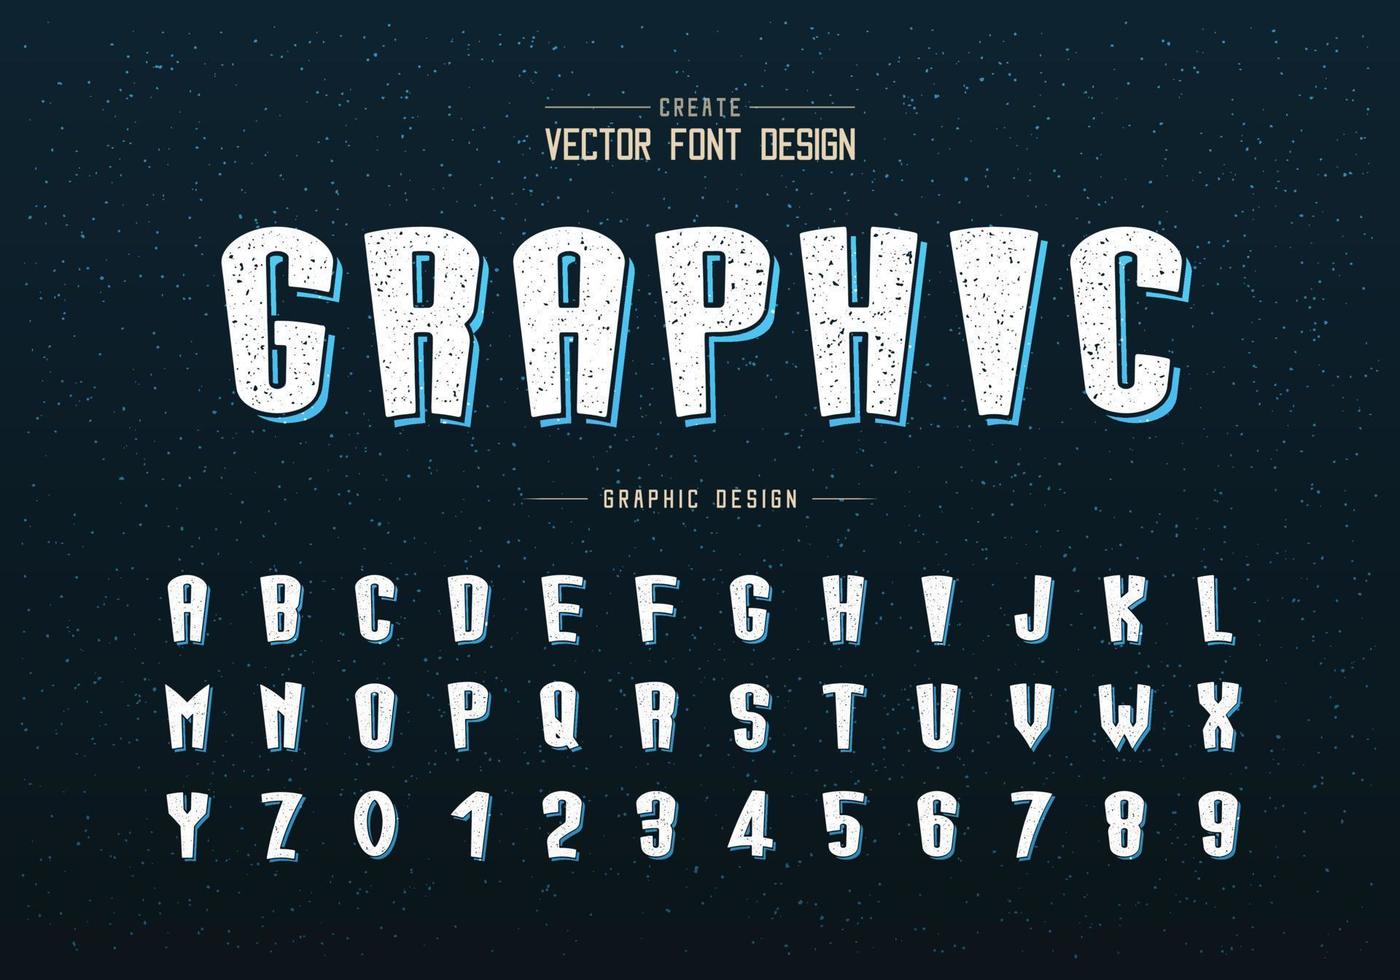 fuente de dibujos animados de textura y vector alfabético, diseño de letras y números de tipografía alta, texto gráfico en el fondo